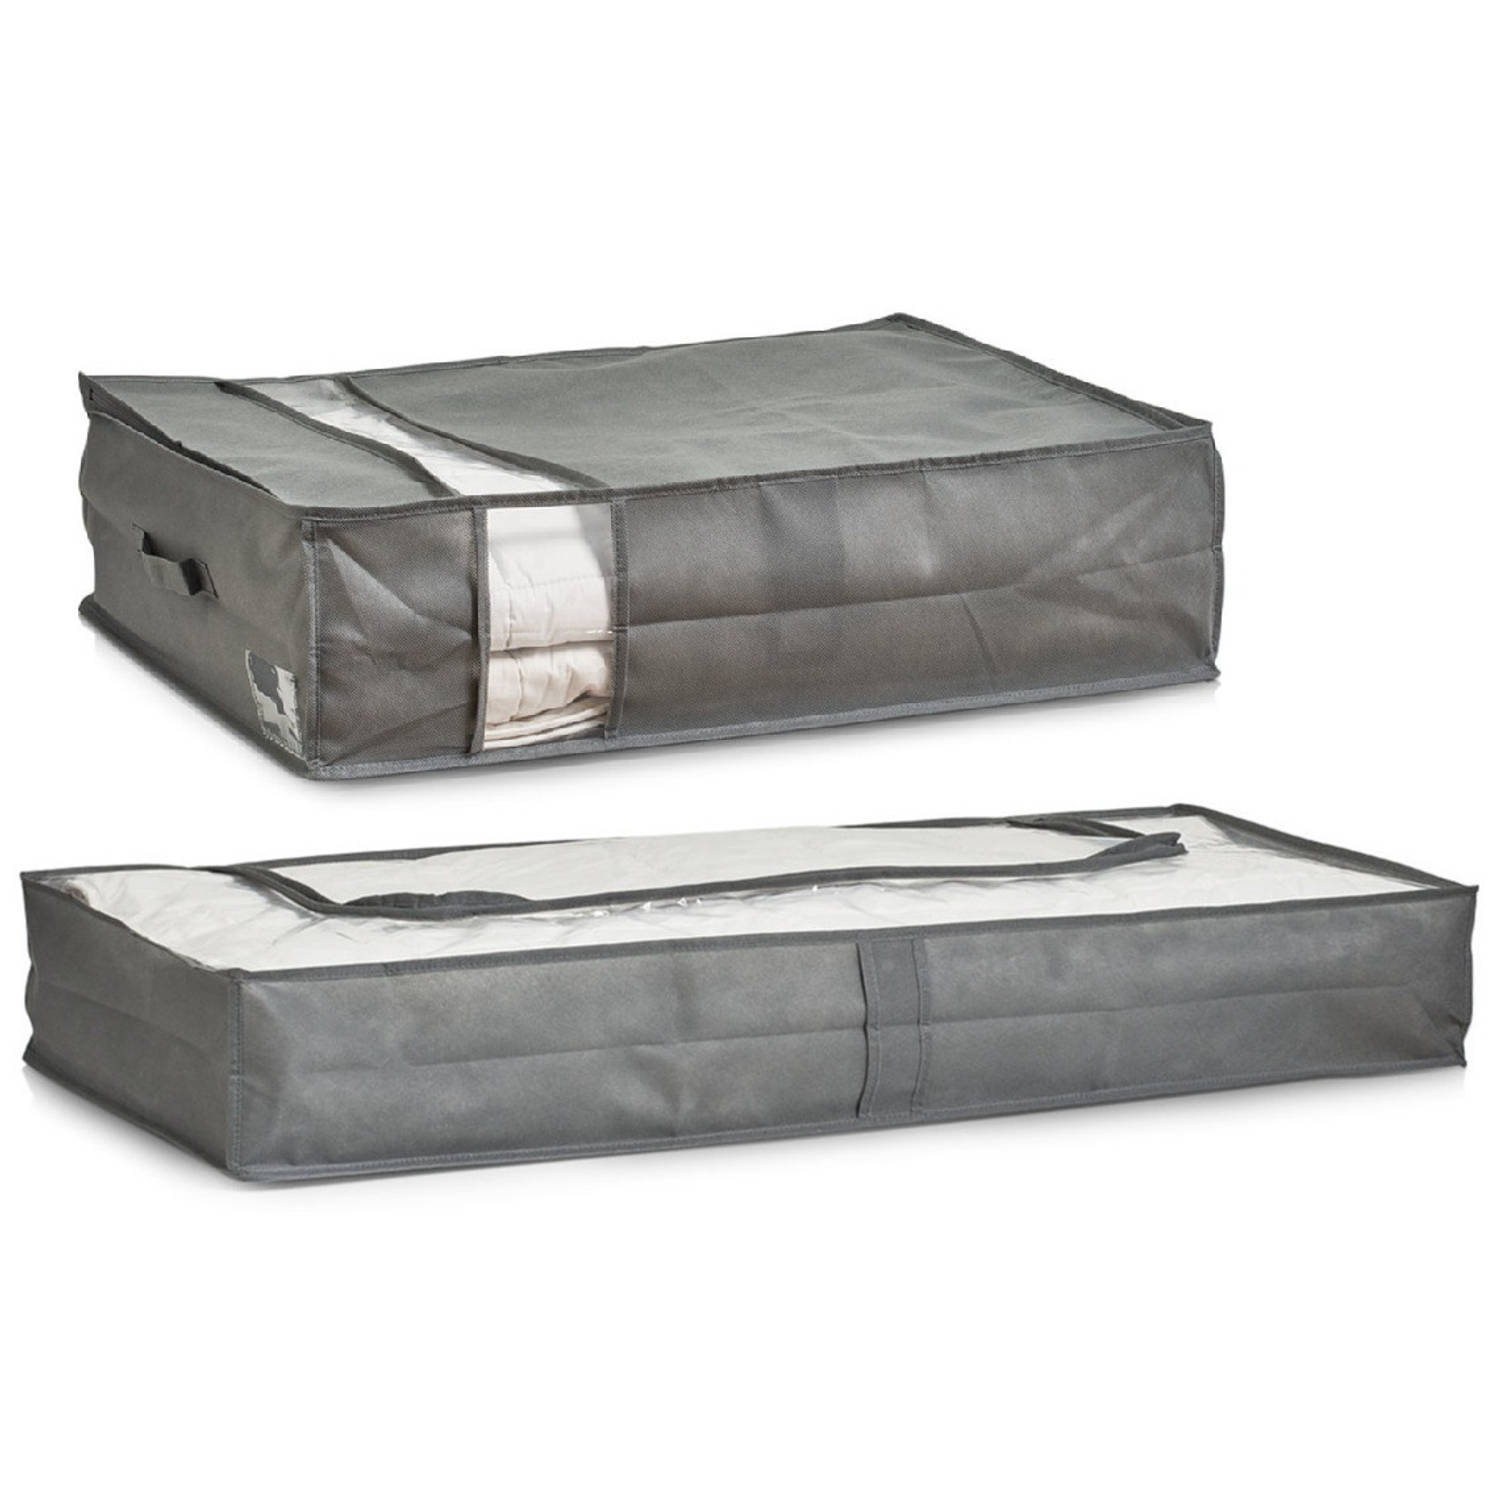 Dekbed-kussen opberghoezen set grijs met venster 103 en 70 cm Opberghoezen